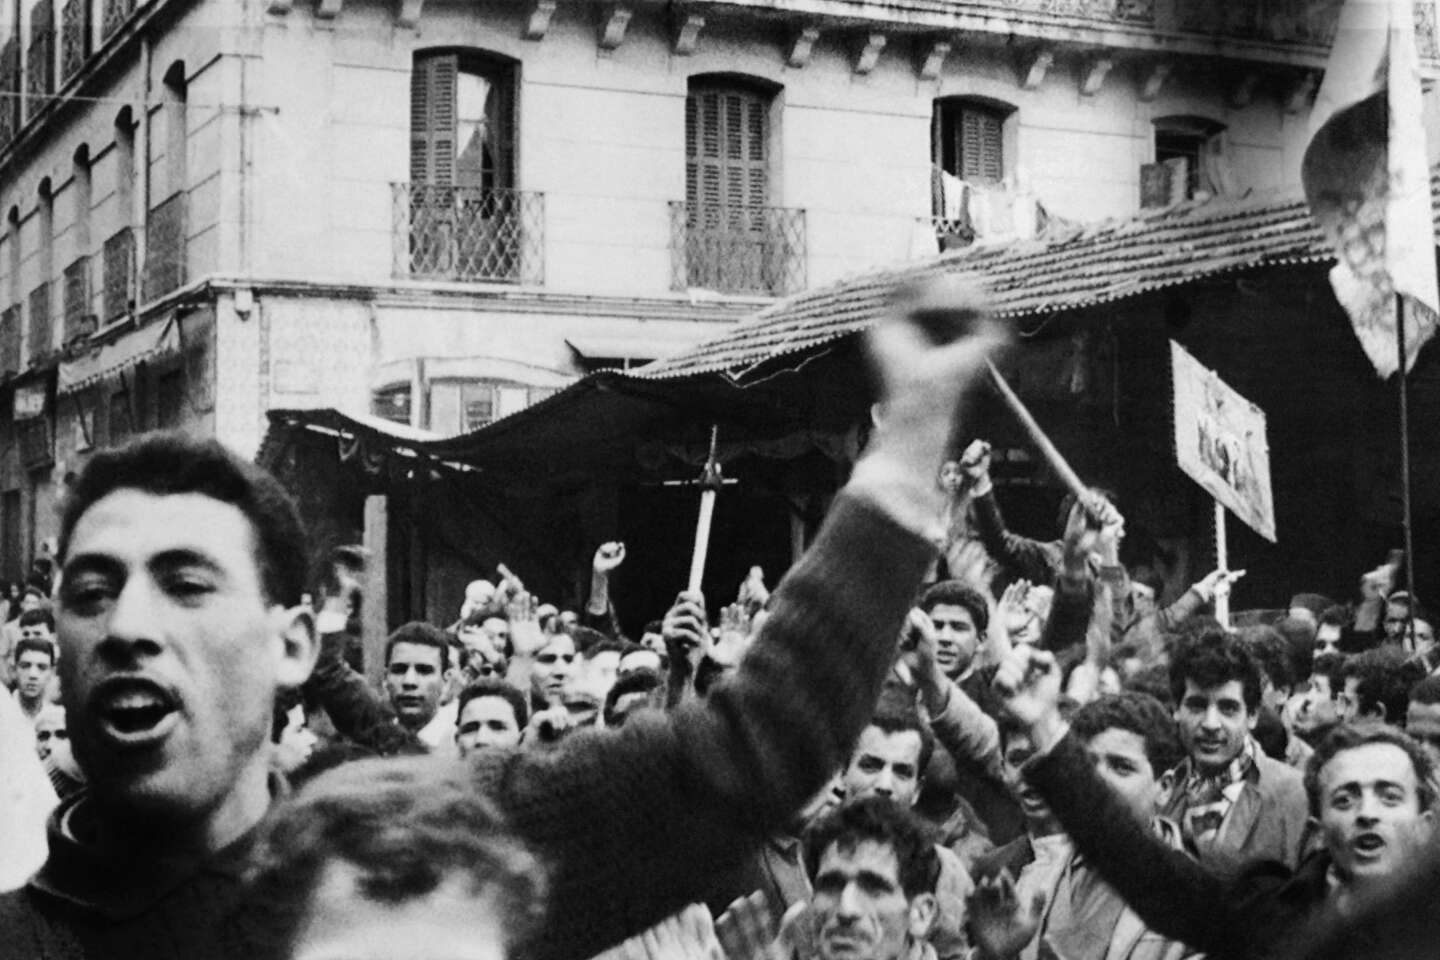 Les historiens de la guerre d’Algérie font la paix – le temps d’un livre collectif